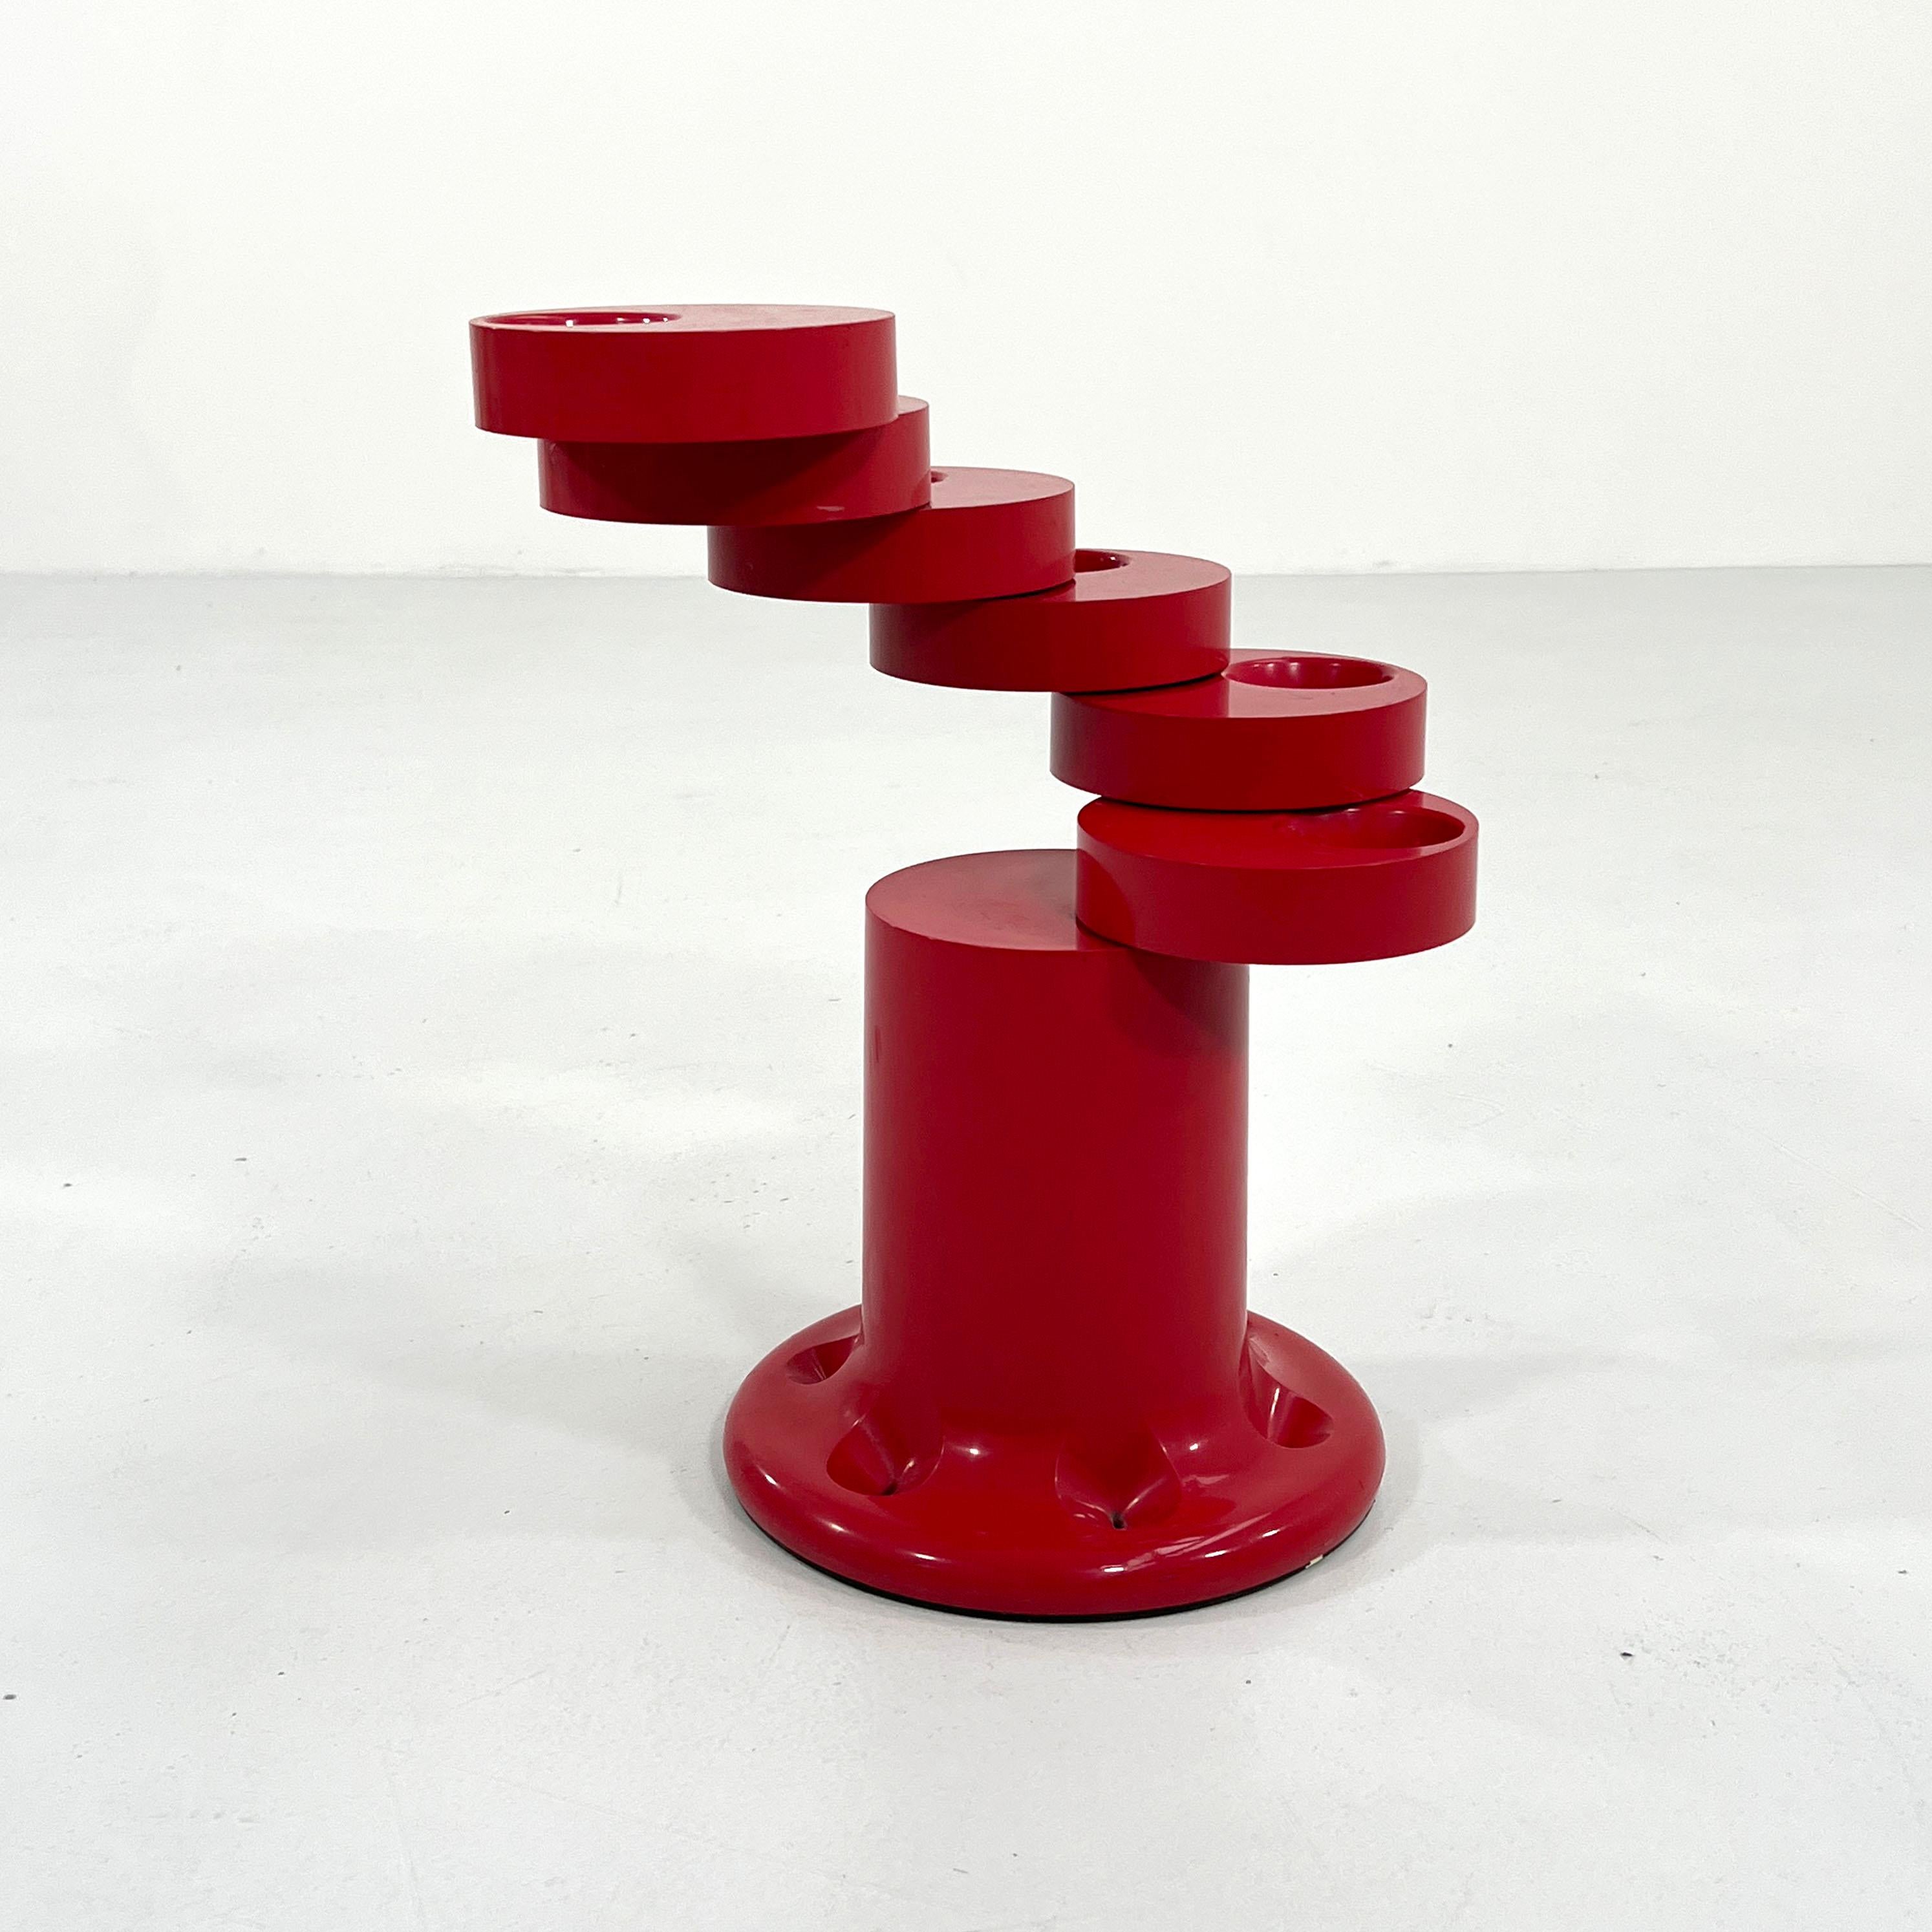 Designer - Giancarlo Piretti
Producer - Anonima Castelli
Model - Pluvium Umbrella Stand
Design period - Seventies
Measurements - width 30 cm x depth 30 cm x height 50 cm
Materials - metal, plastic
Color - Red.